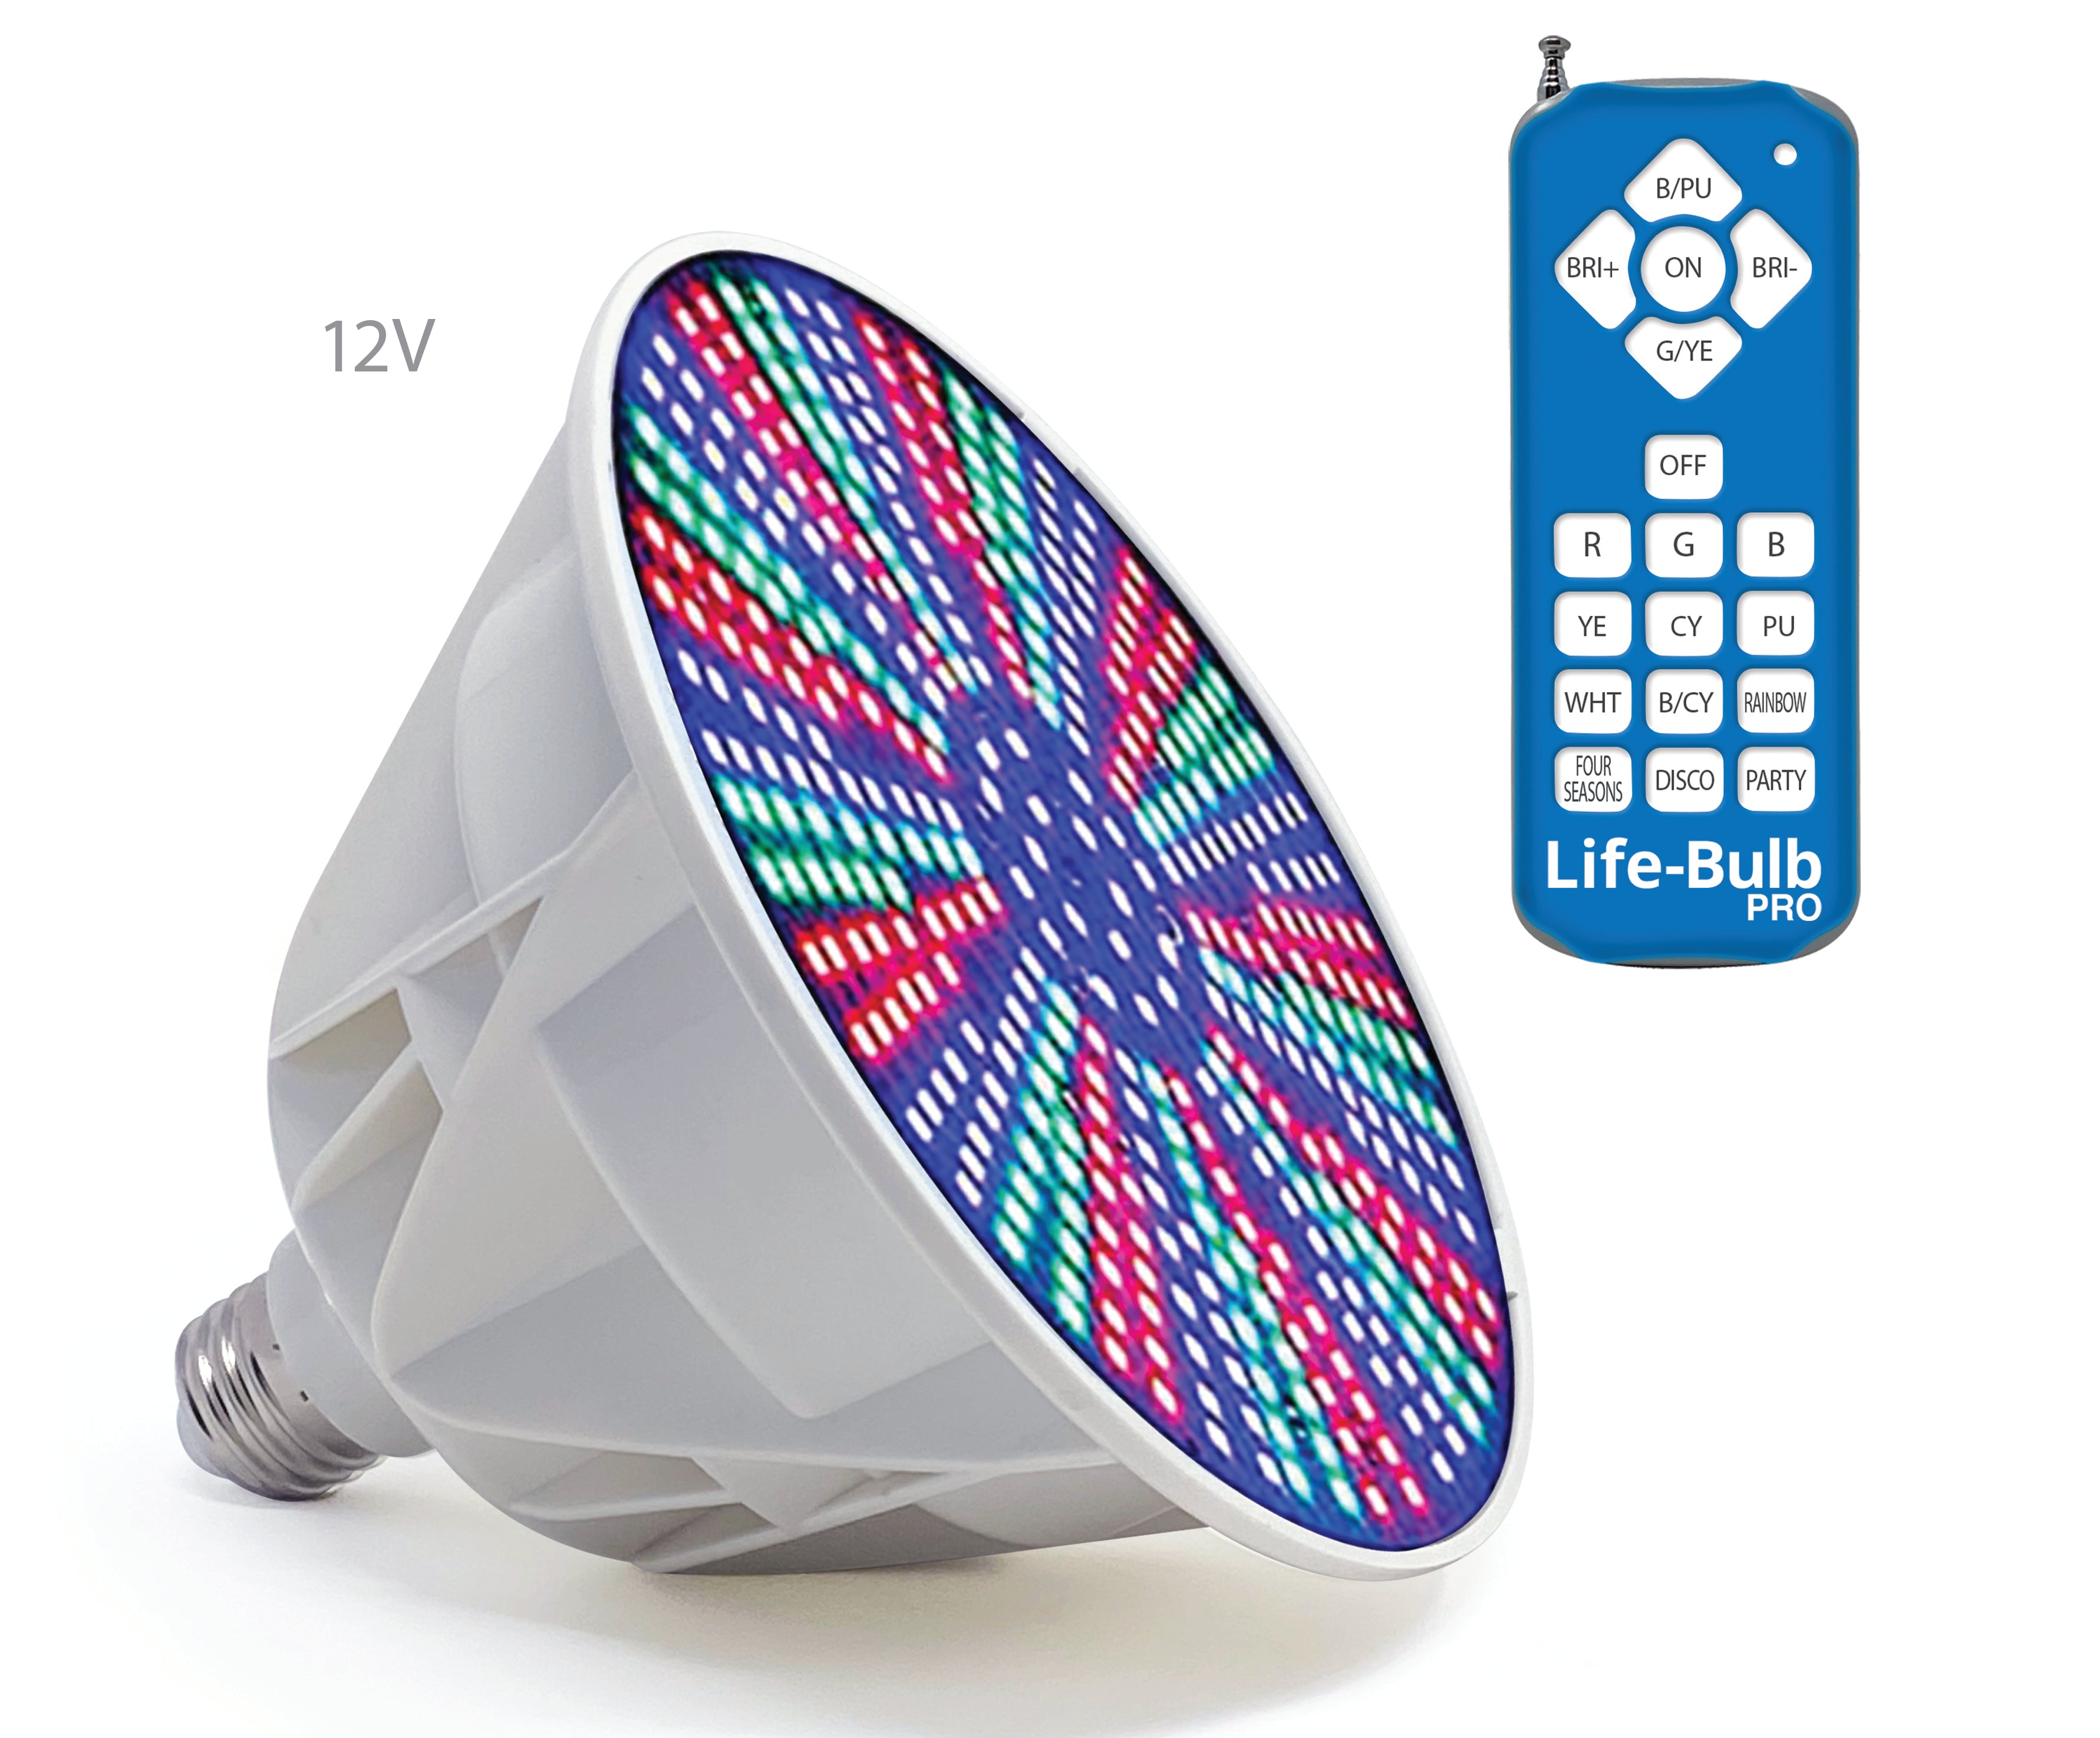 Life-Bulb PRO LED-Farbpool-Glühbirne mit XR Signal™-Fernbedienungstechnologie für in den Boden eingelassene Pools | Lebenslange Ersatzgarantie | Passend für Pentair-, Hayward- und andere E26-Schraubfassungen | 12V 40W 